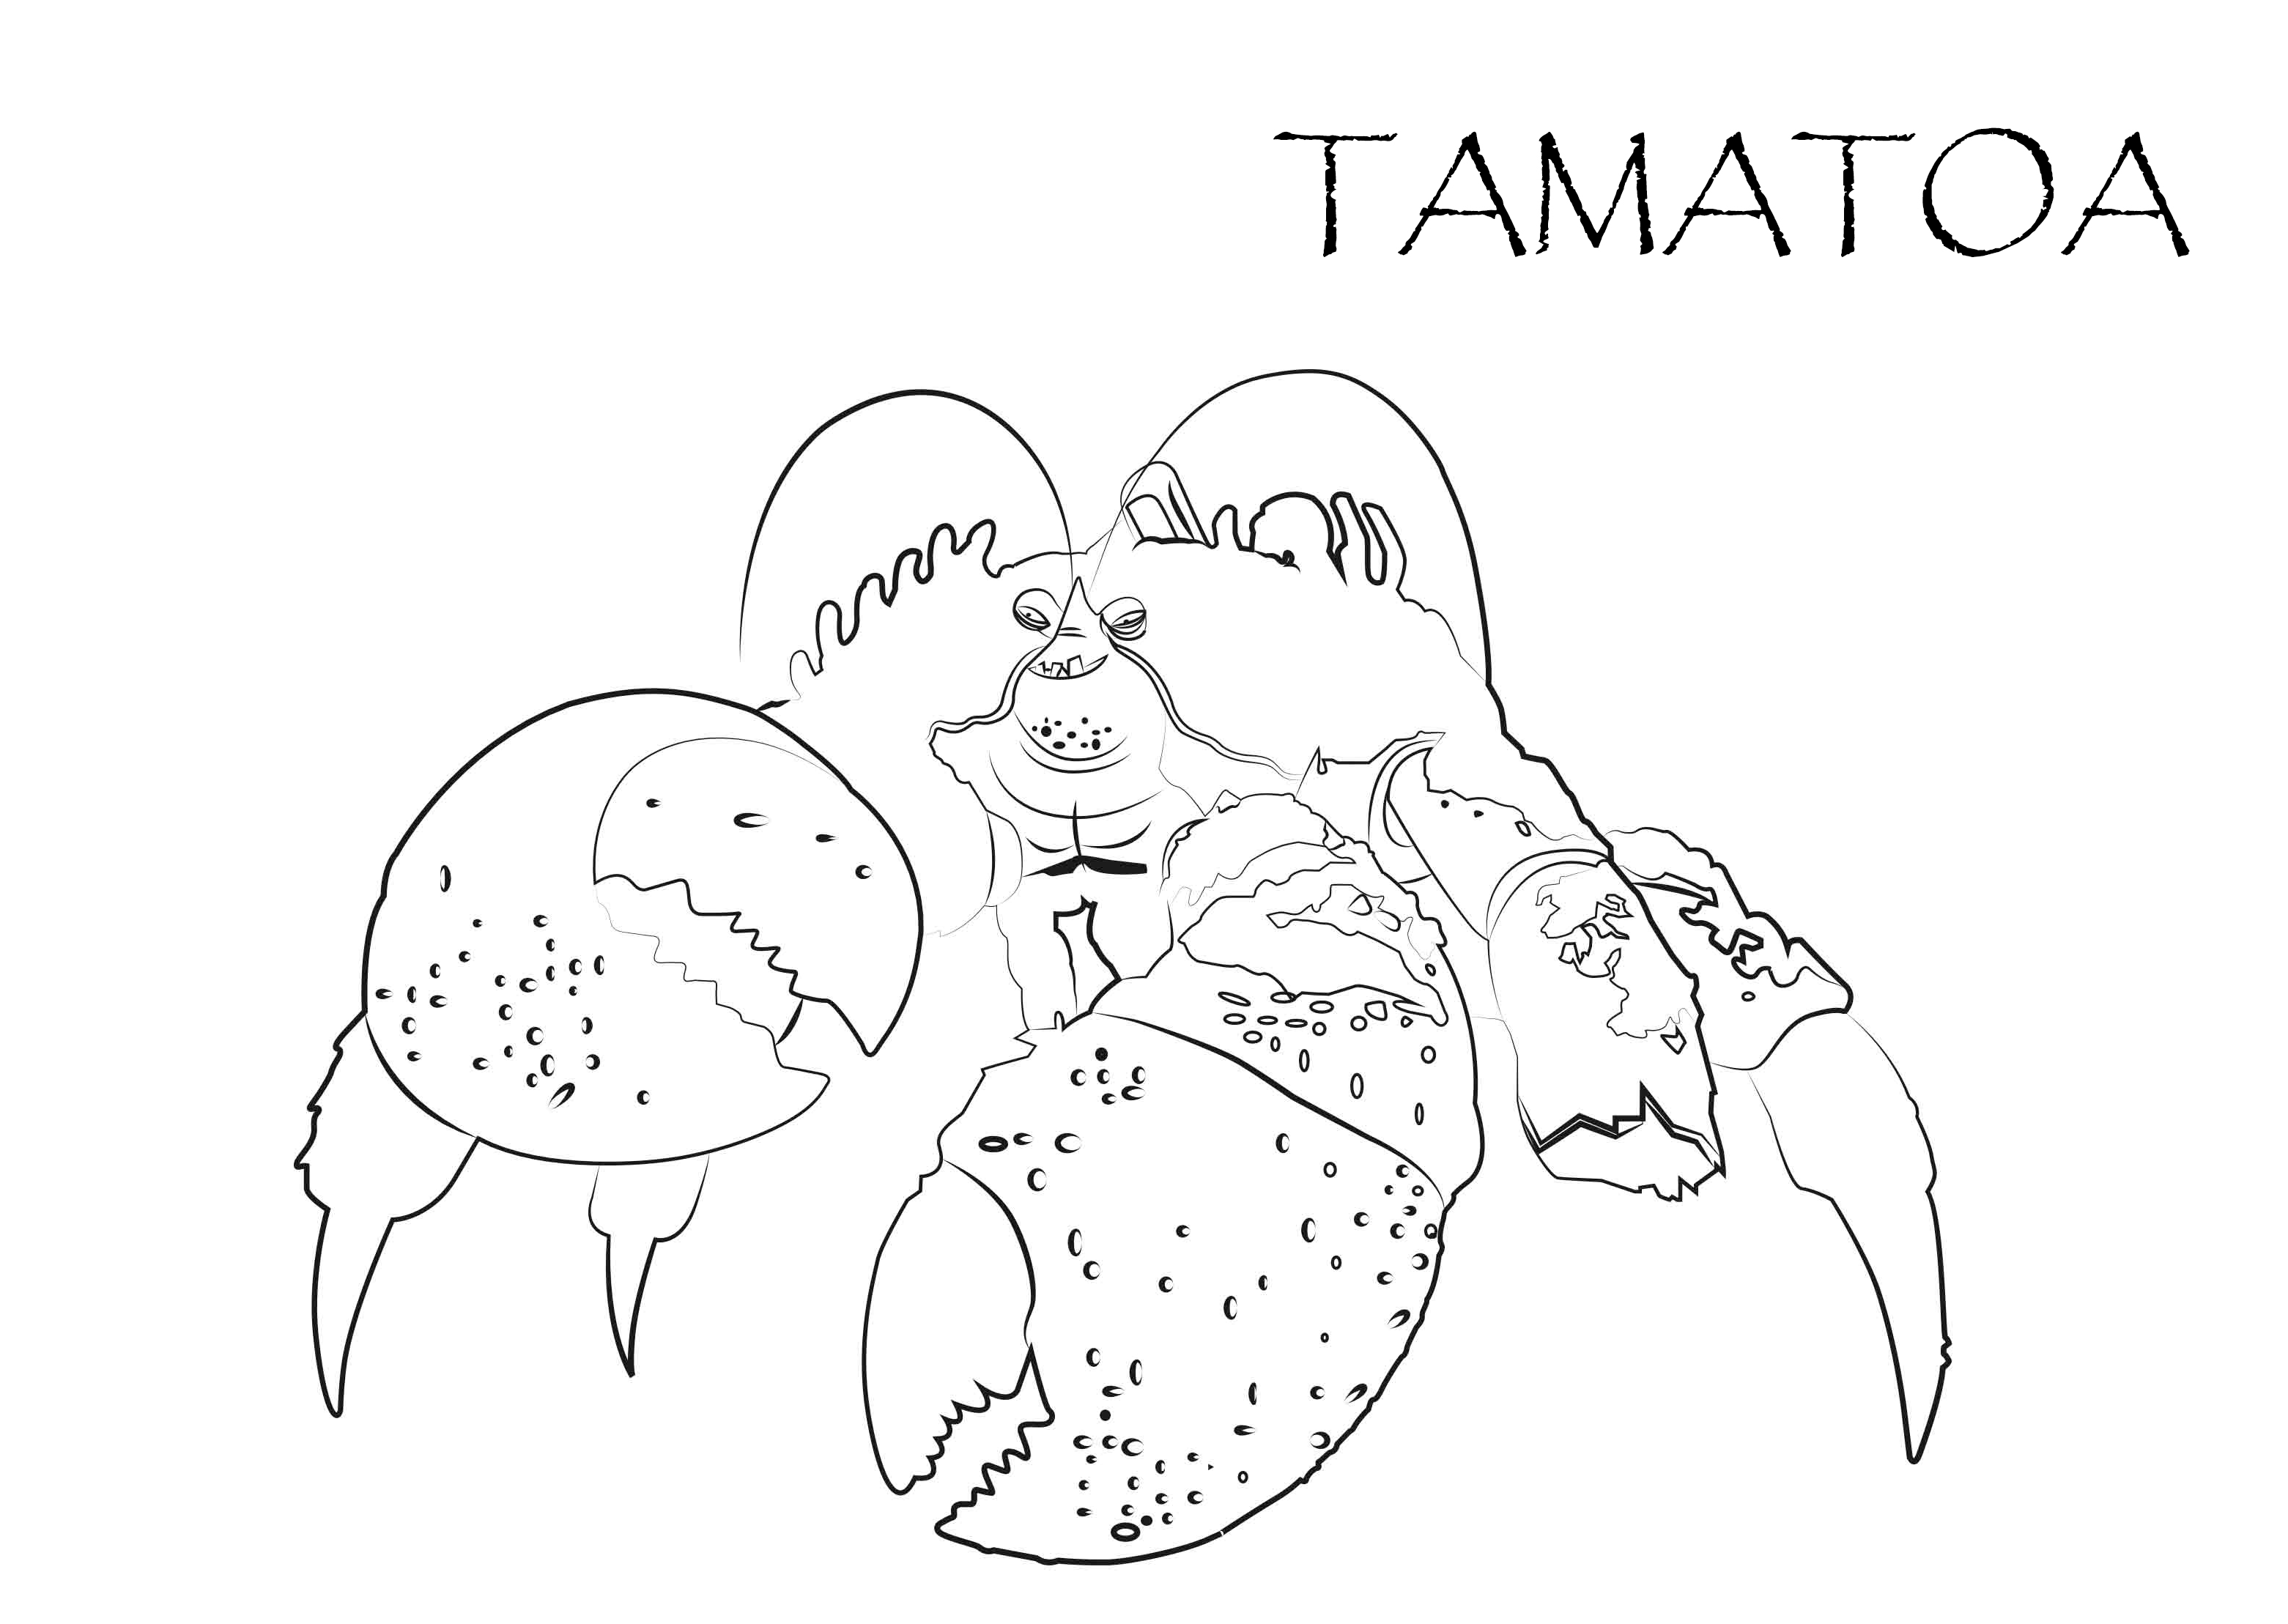 Dibujo para colorear del personaje del cangrejo Tamatoa de la película Moana Un mar de aventuras de Disney